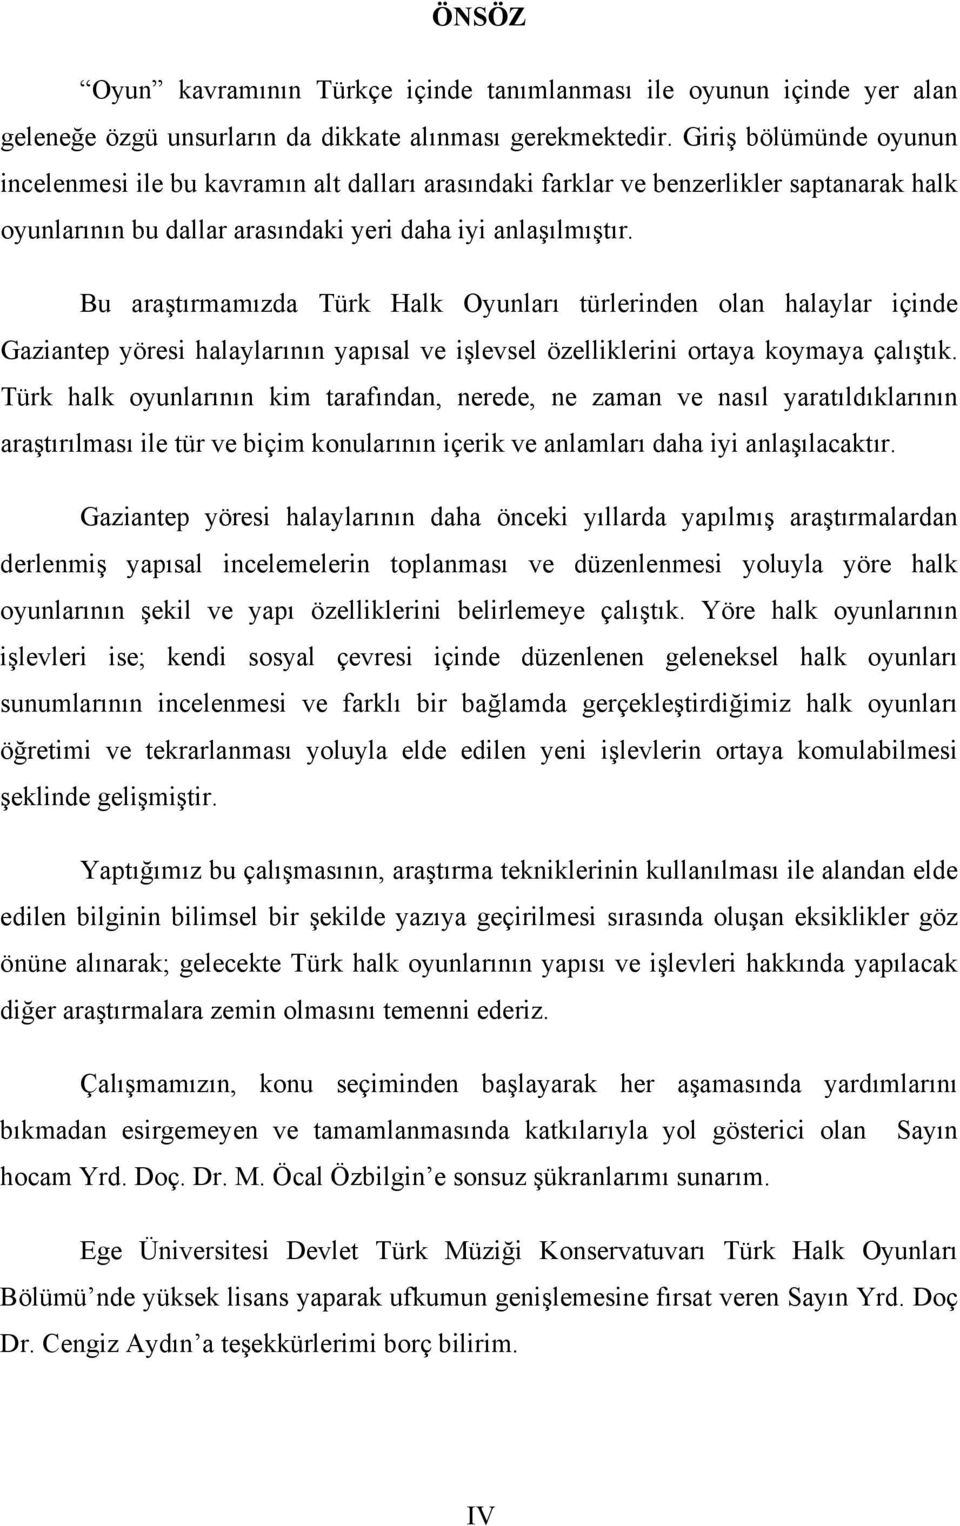 Bu araştırmamızda Türk Halk Oyunları türlerinden olan halaylar içinde Gaziantep yöresi halaylarının yapısal ve işlevsel özelliklerini ortaya koymaya çalıştık.